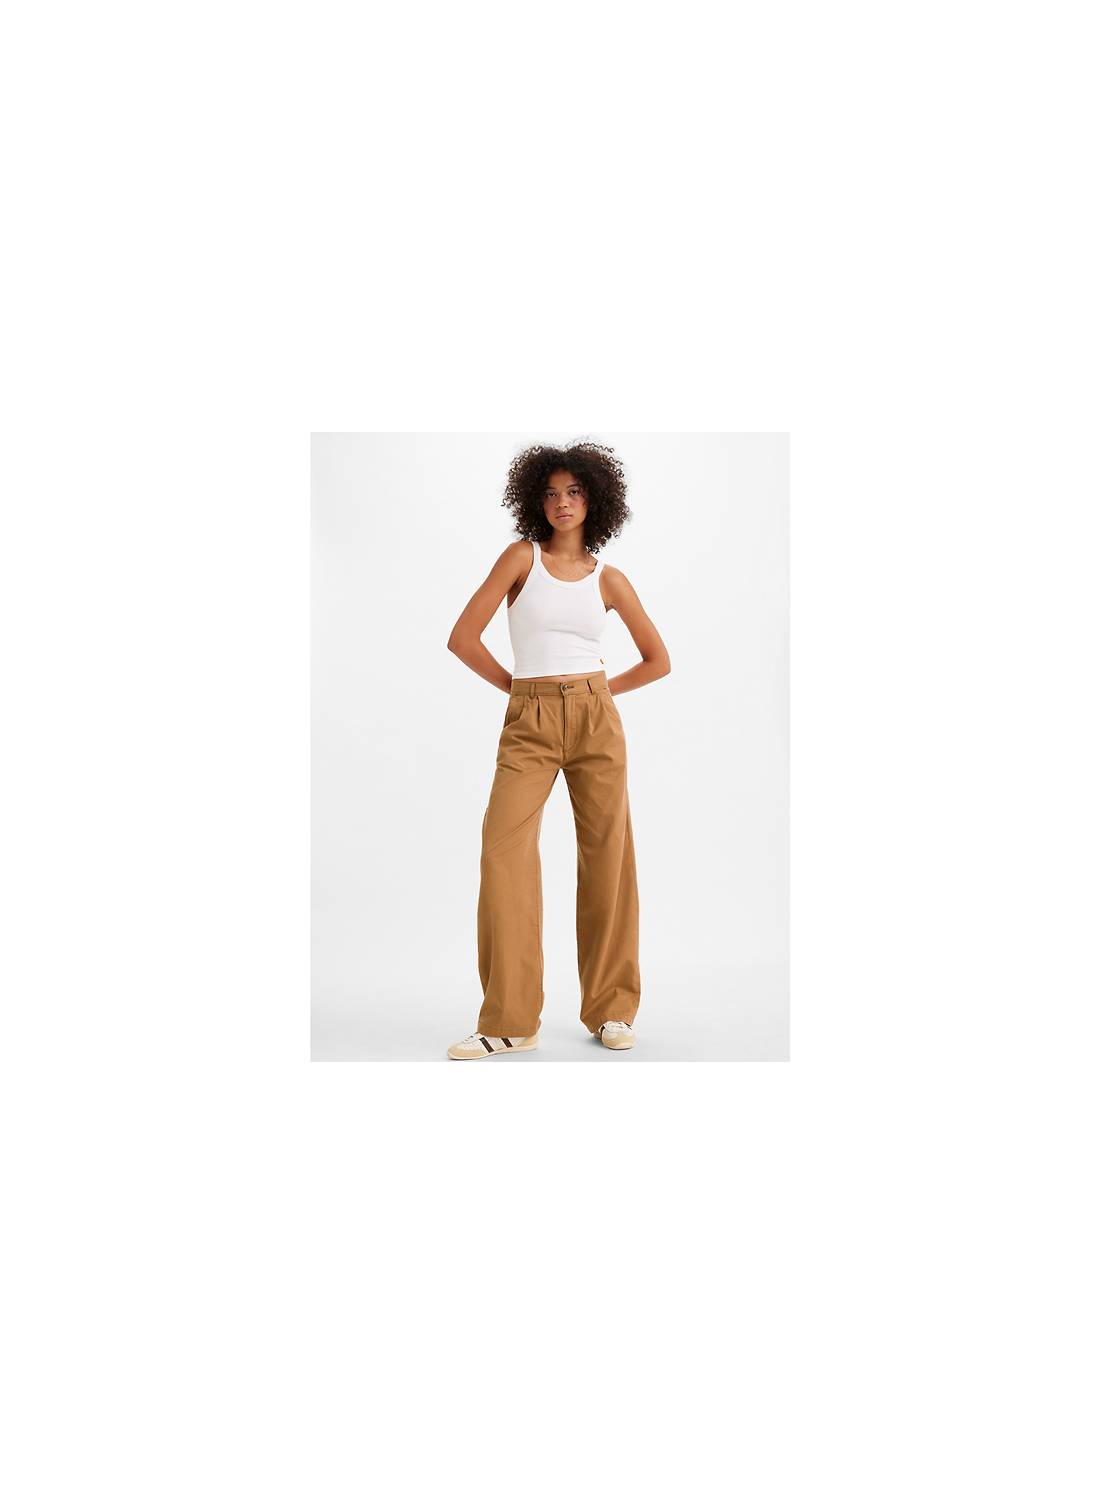 Brown Yoga Pants. Linen Women's Pants. Linen Woman Pants. Women